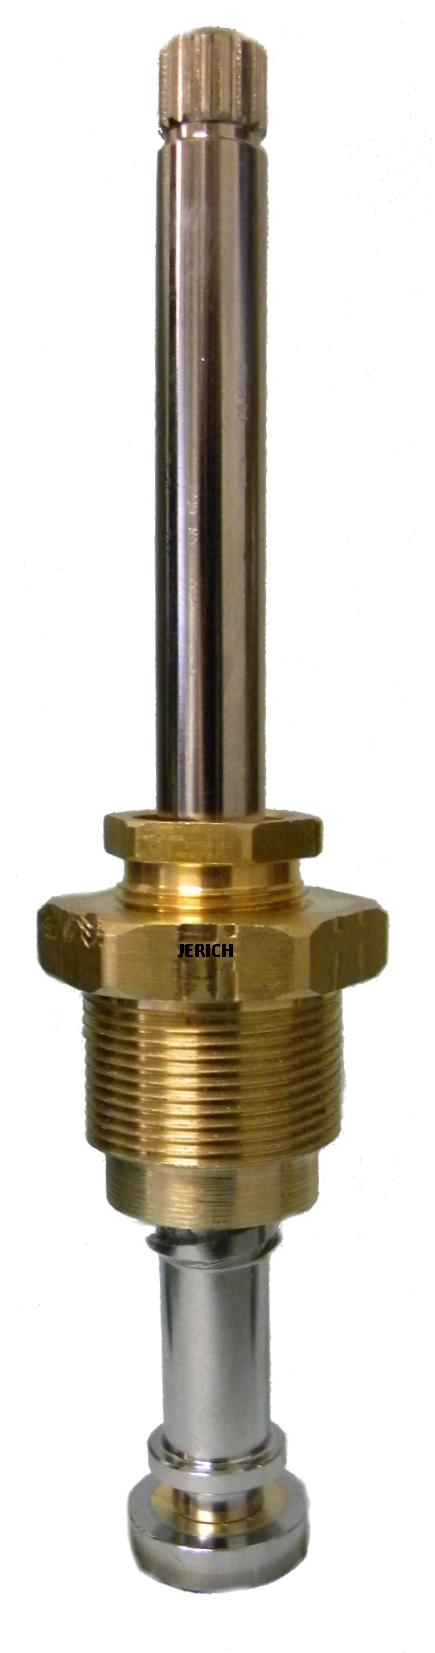 Jerich 72161 Am Brass stem unit